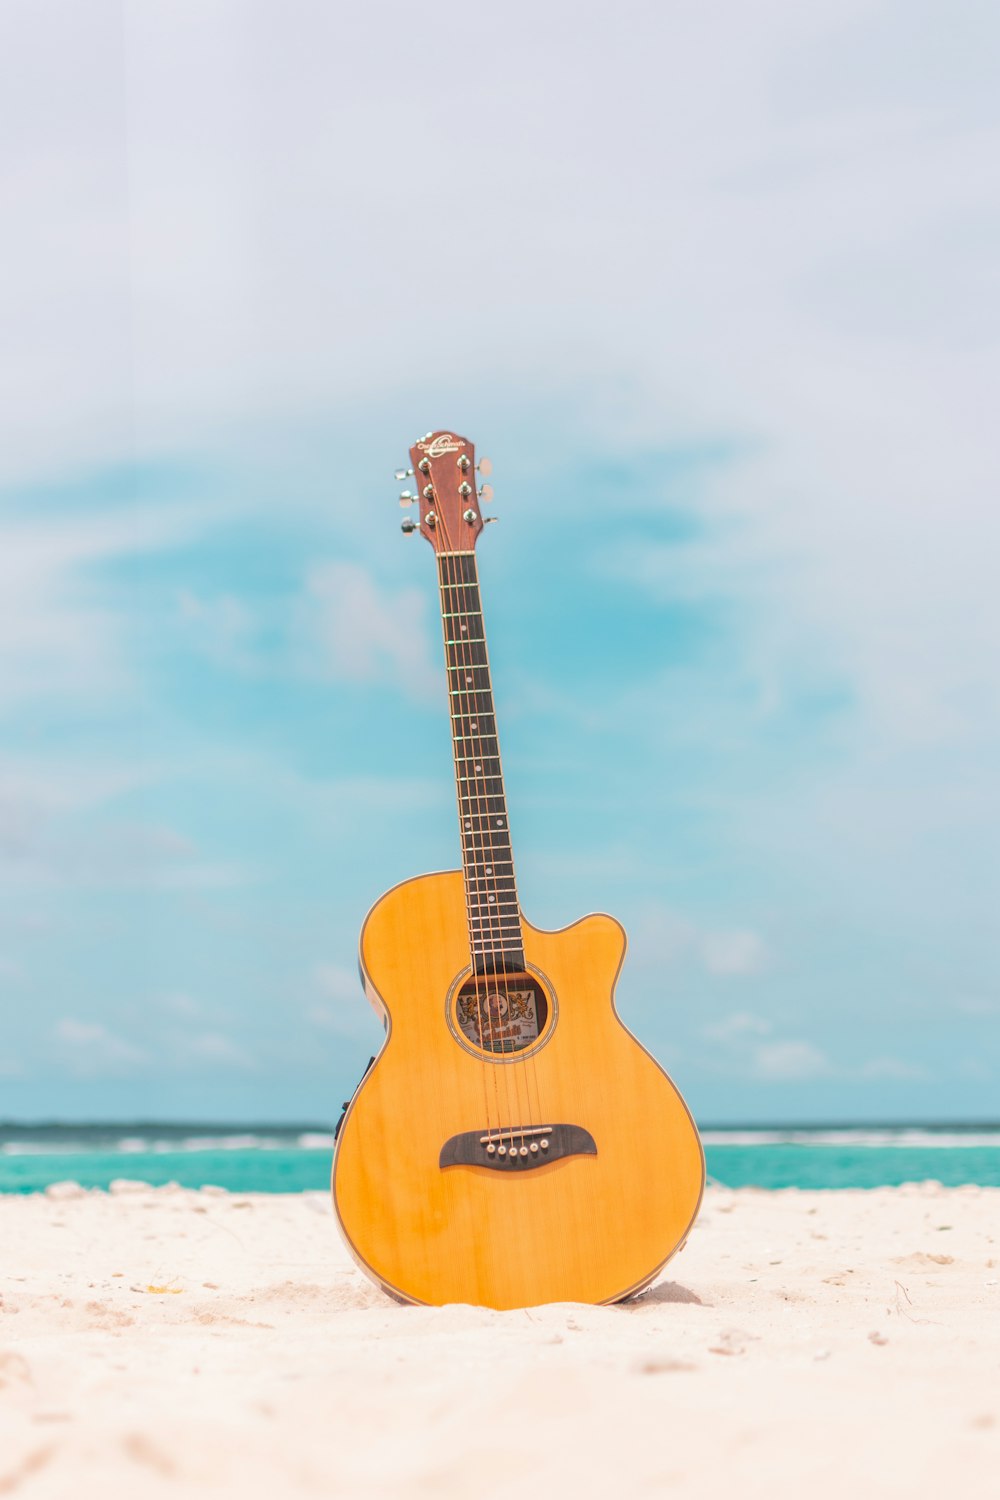 Guitarra acústica marrón sobre arena blanca durante el día